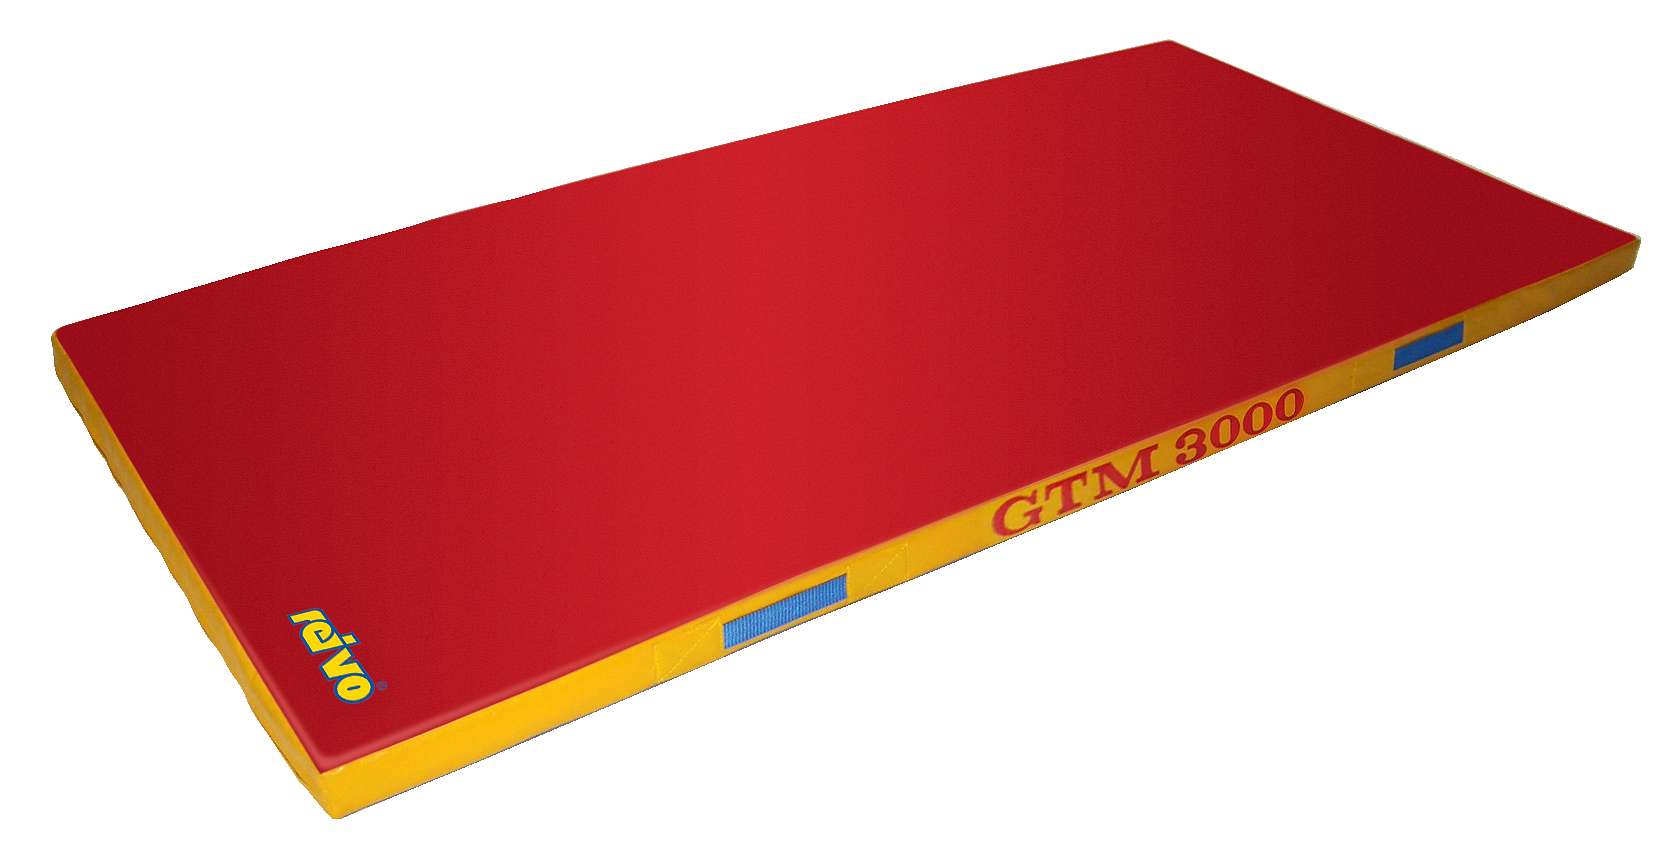 Sport-Thieme Turnmatte "GTM 3000", Rot, 200x100x6 cm, 17 kg von Sport-Thieme